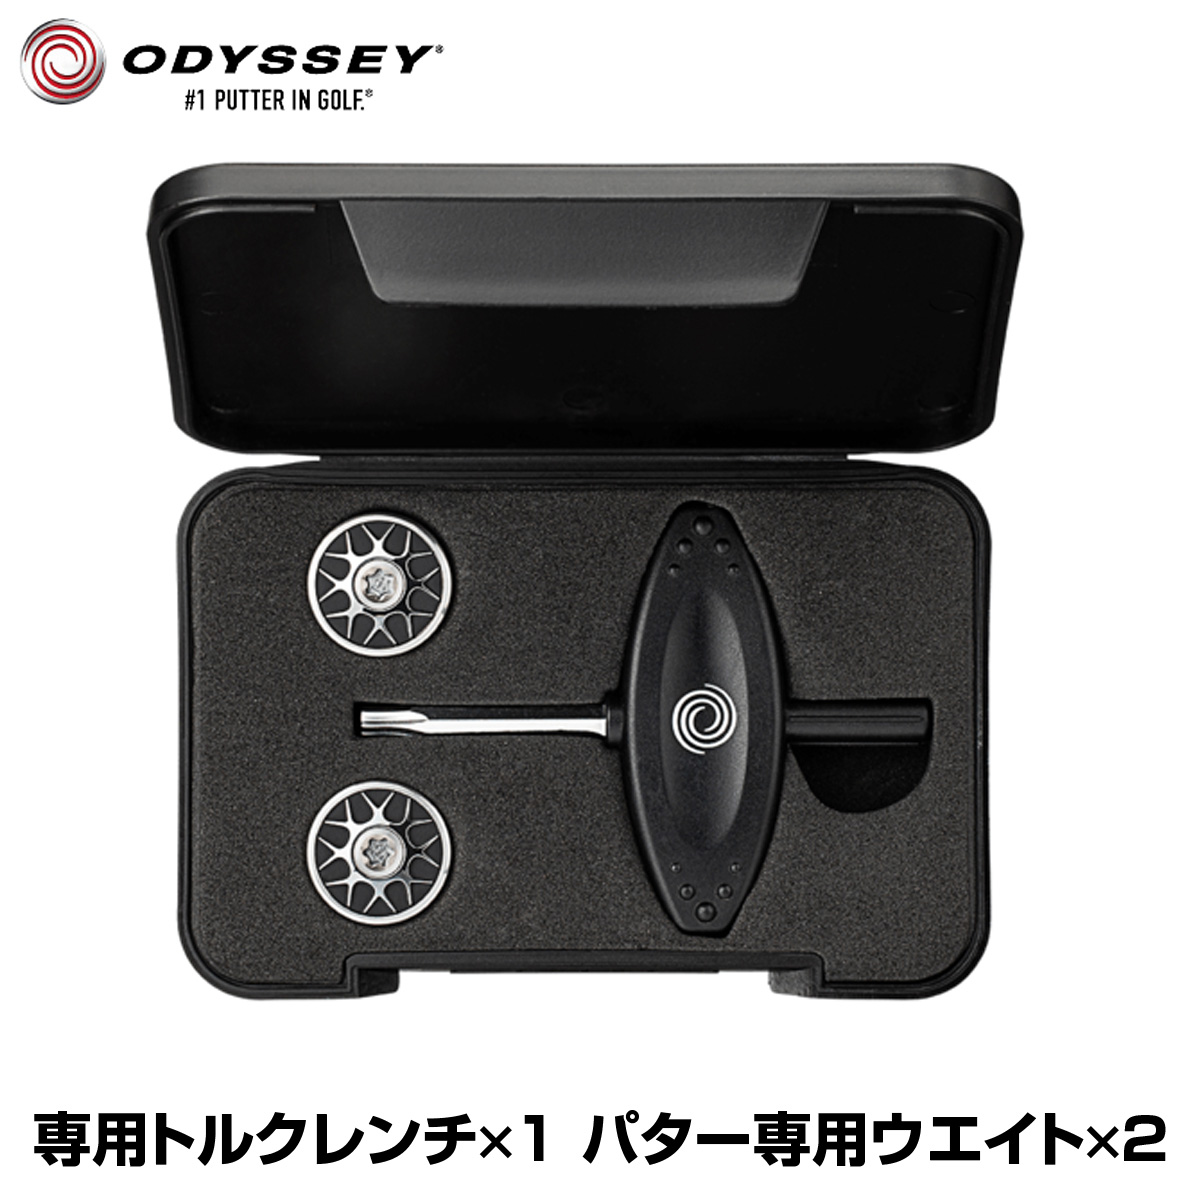 激安超安値 ODYSSEY(オデッセイ)日本正規品 オデッセイパター専用 WEIGHT KIT(ウェイトキット) 専用ケース入り (専用レンチ×1個、パター専用ウェイト×2個) 